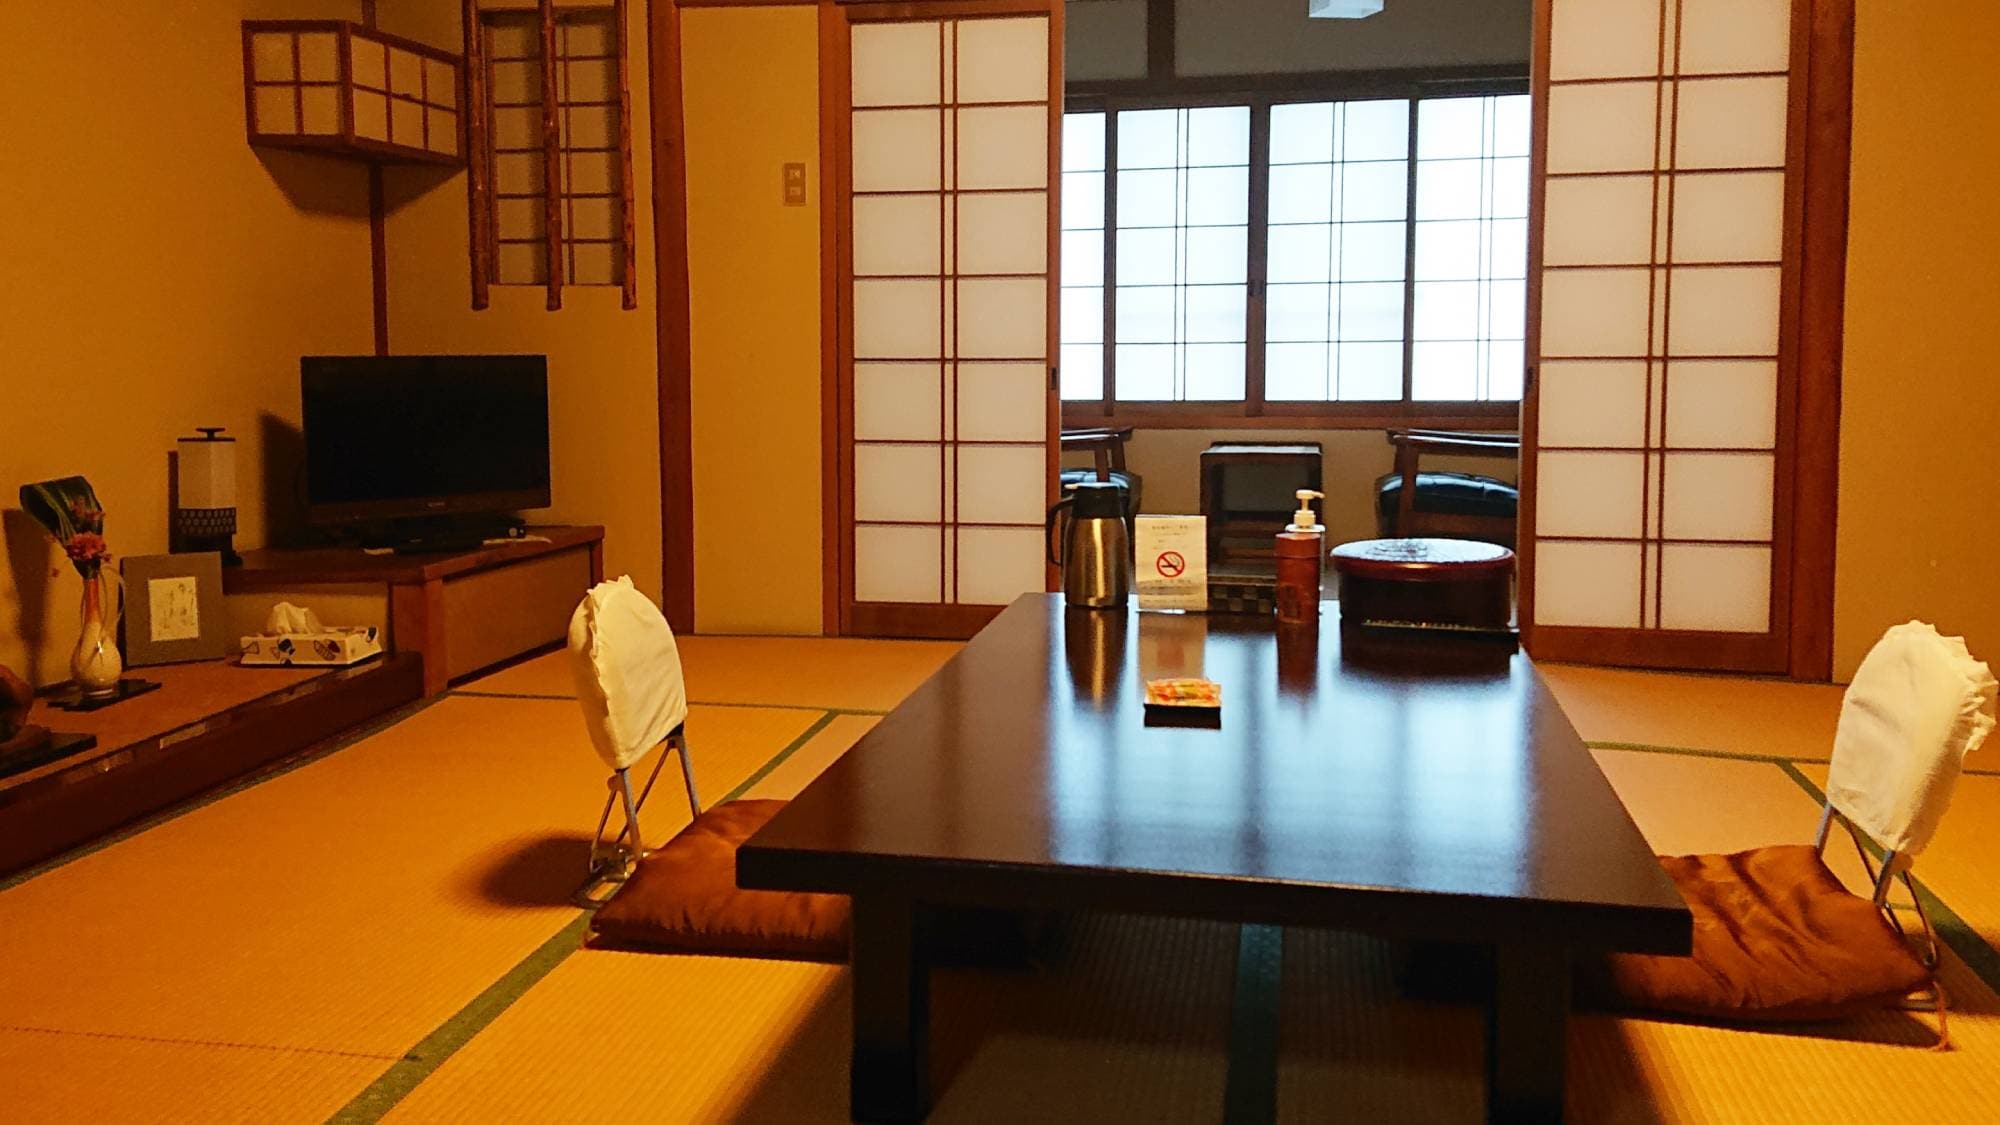 ・ ห้องปลอดบุหรี่สไตล์ญี่ปุ่น 10 เสื่อทาทามิ (มีอ่างอาบน้ำและห้องส้วม)